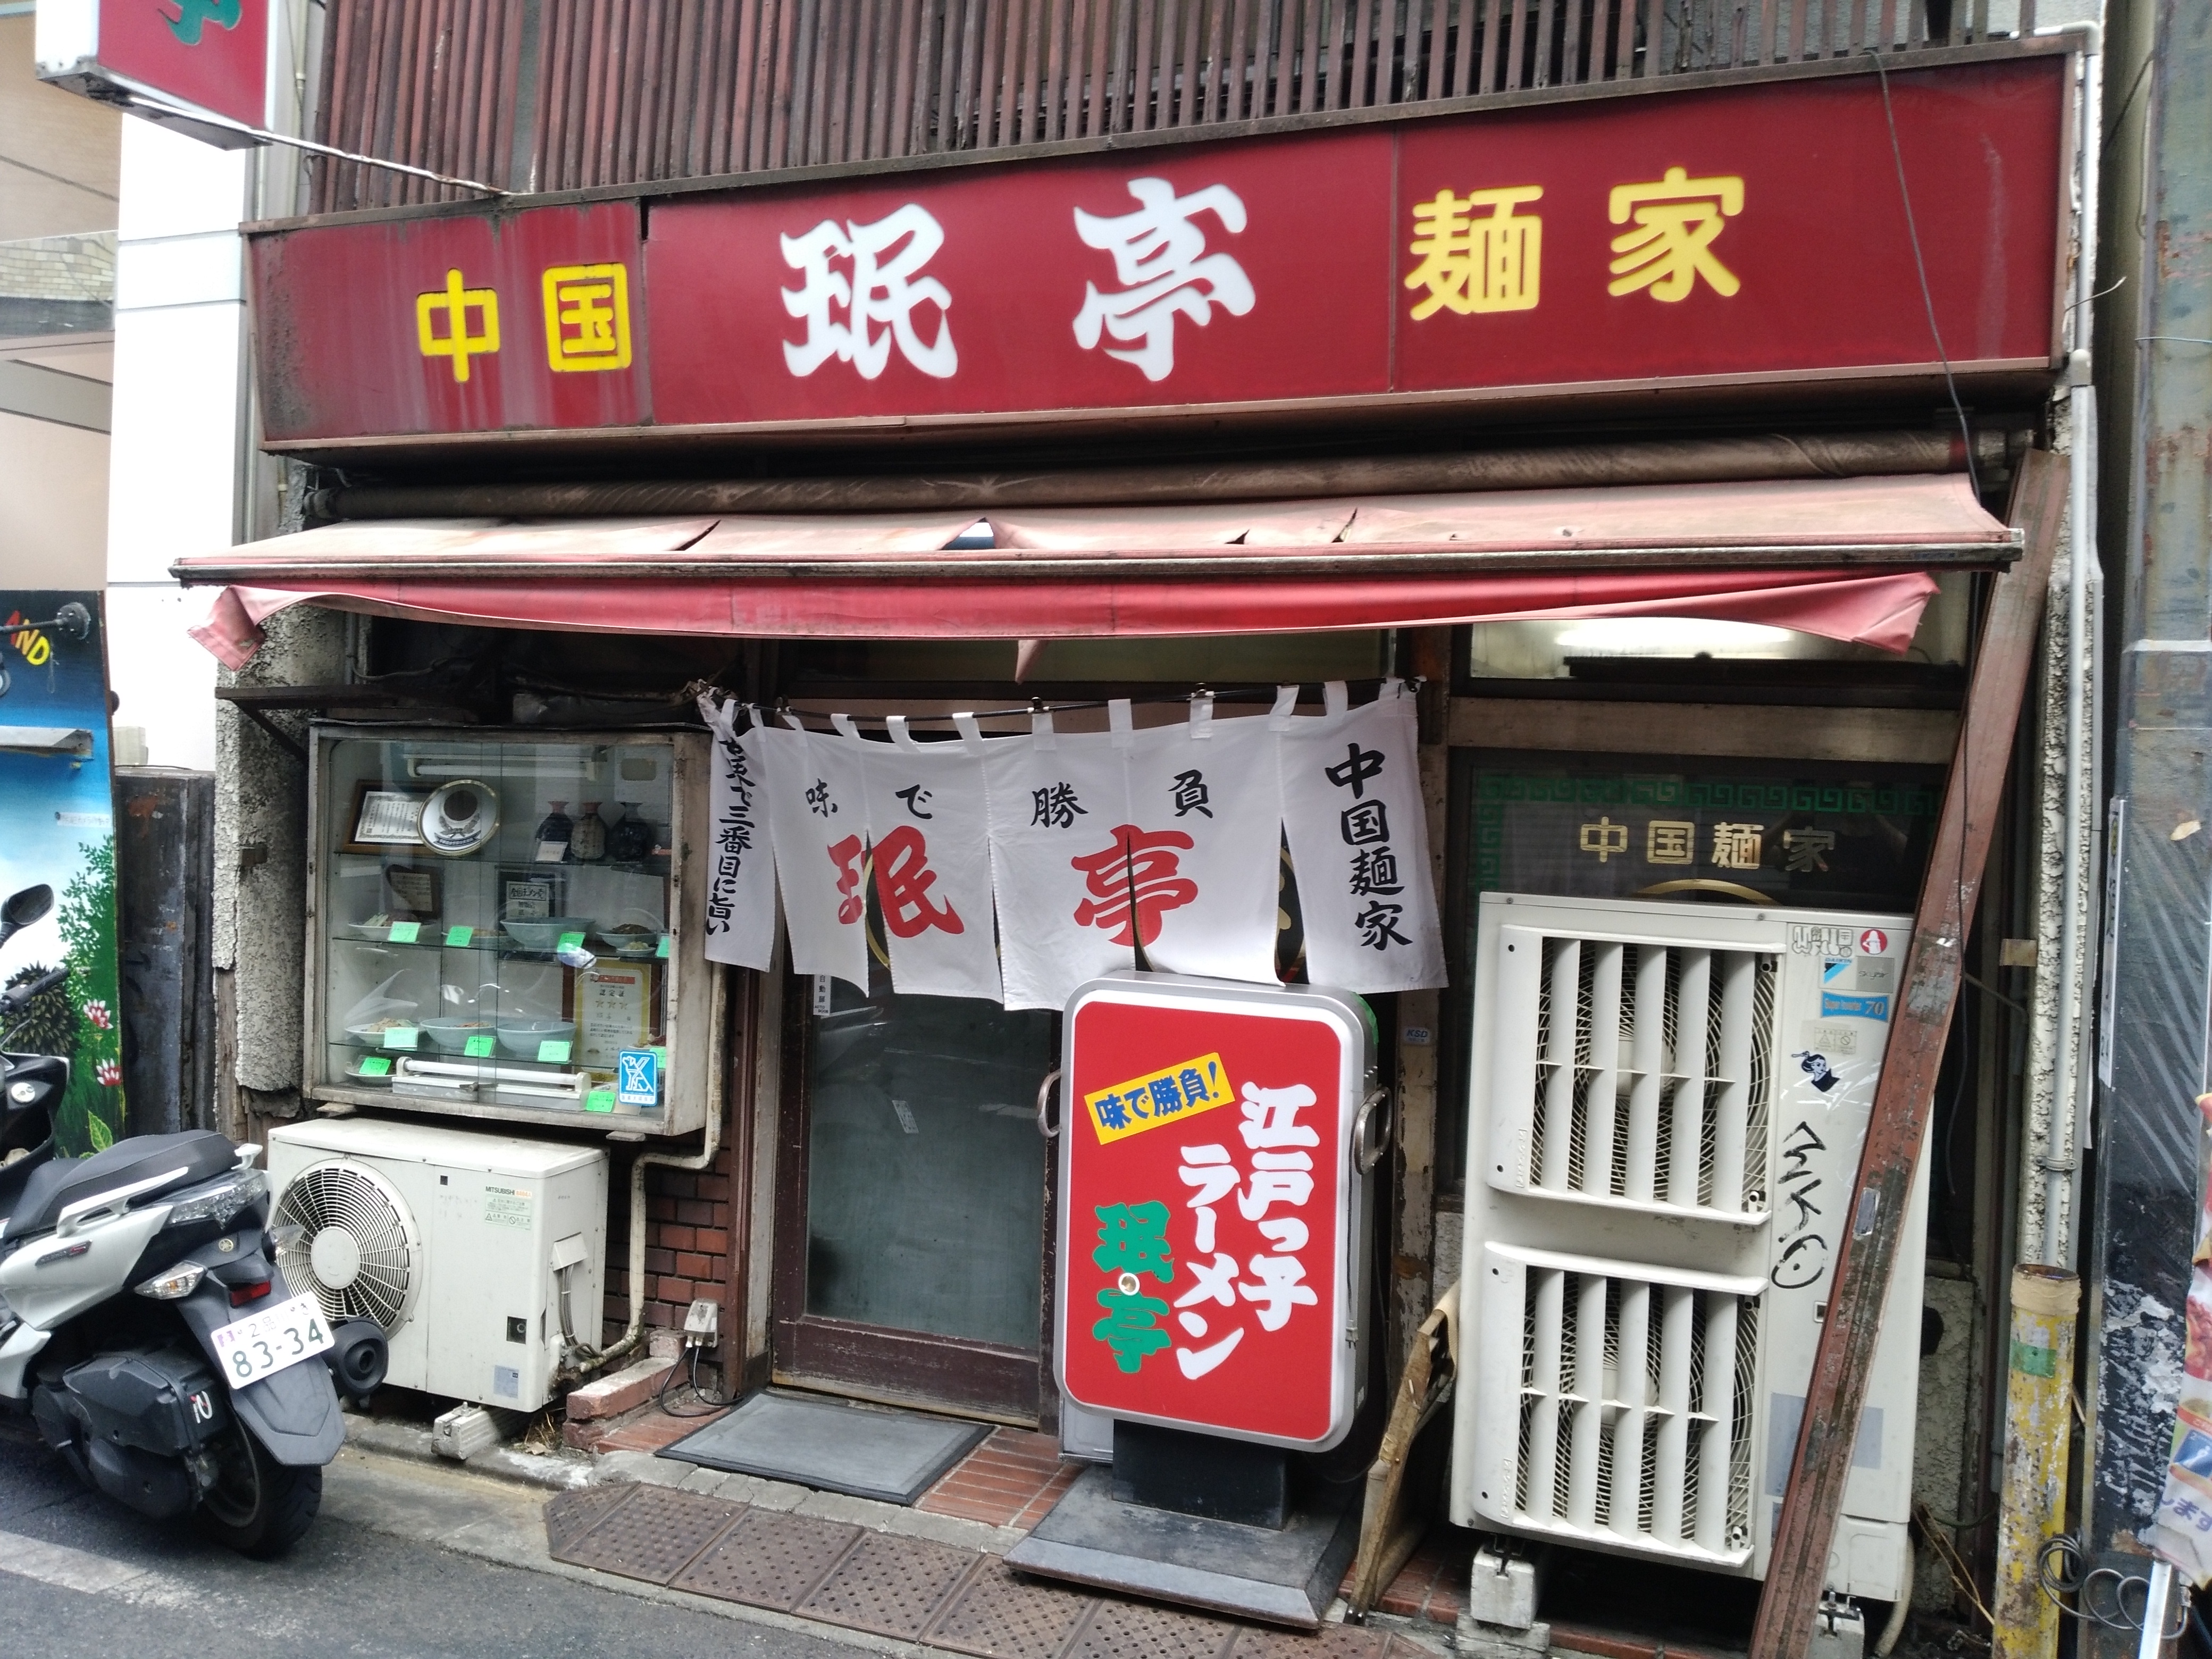 下北沢は老舗中華料理屋「珉亭」に行ってきた。